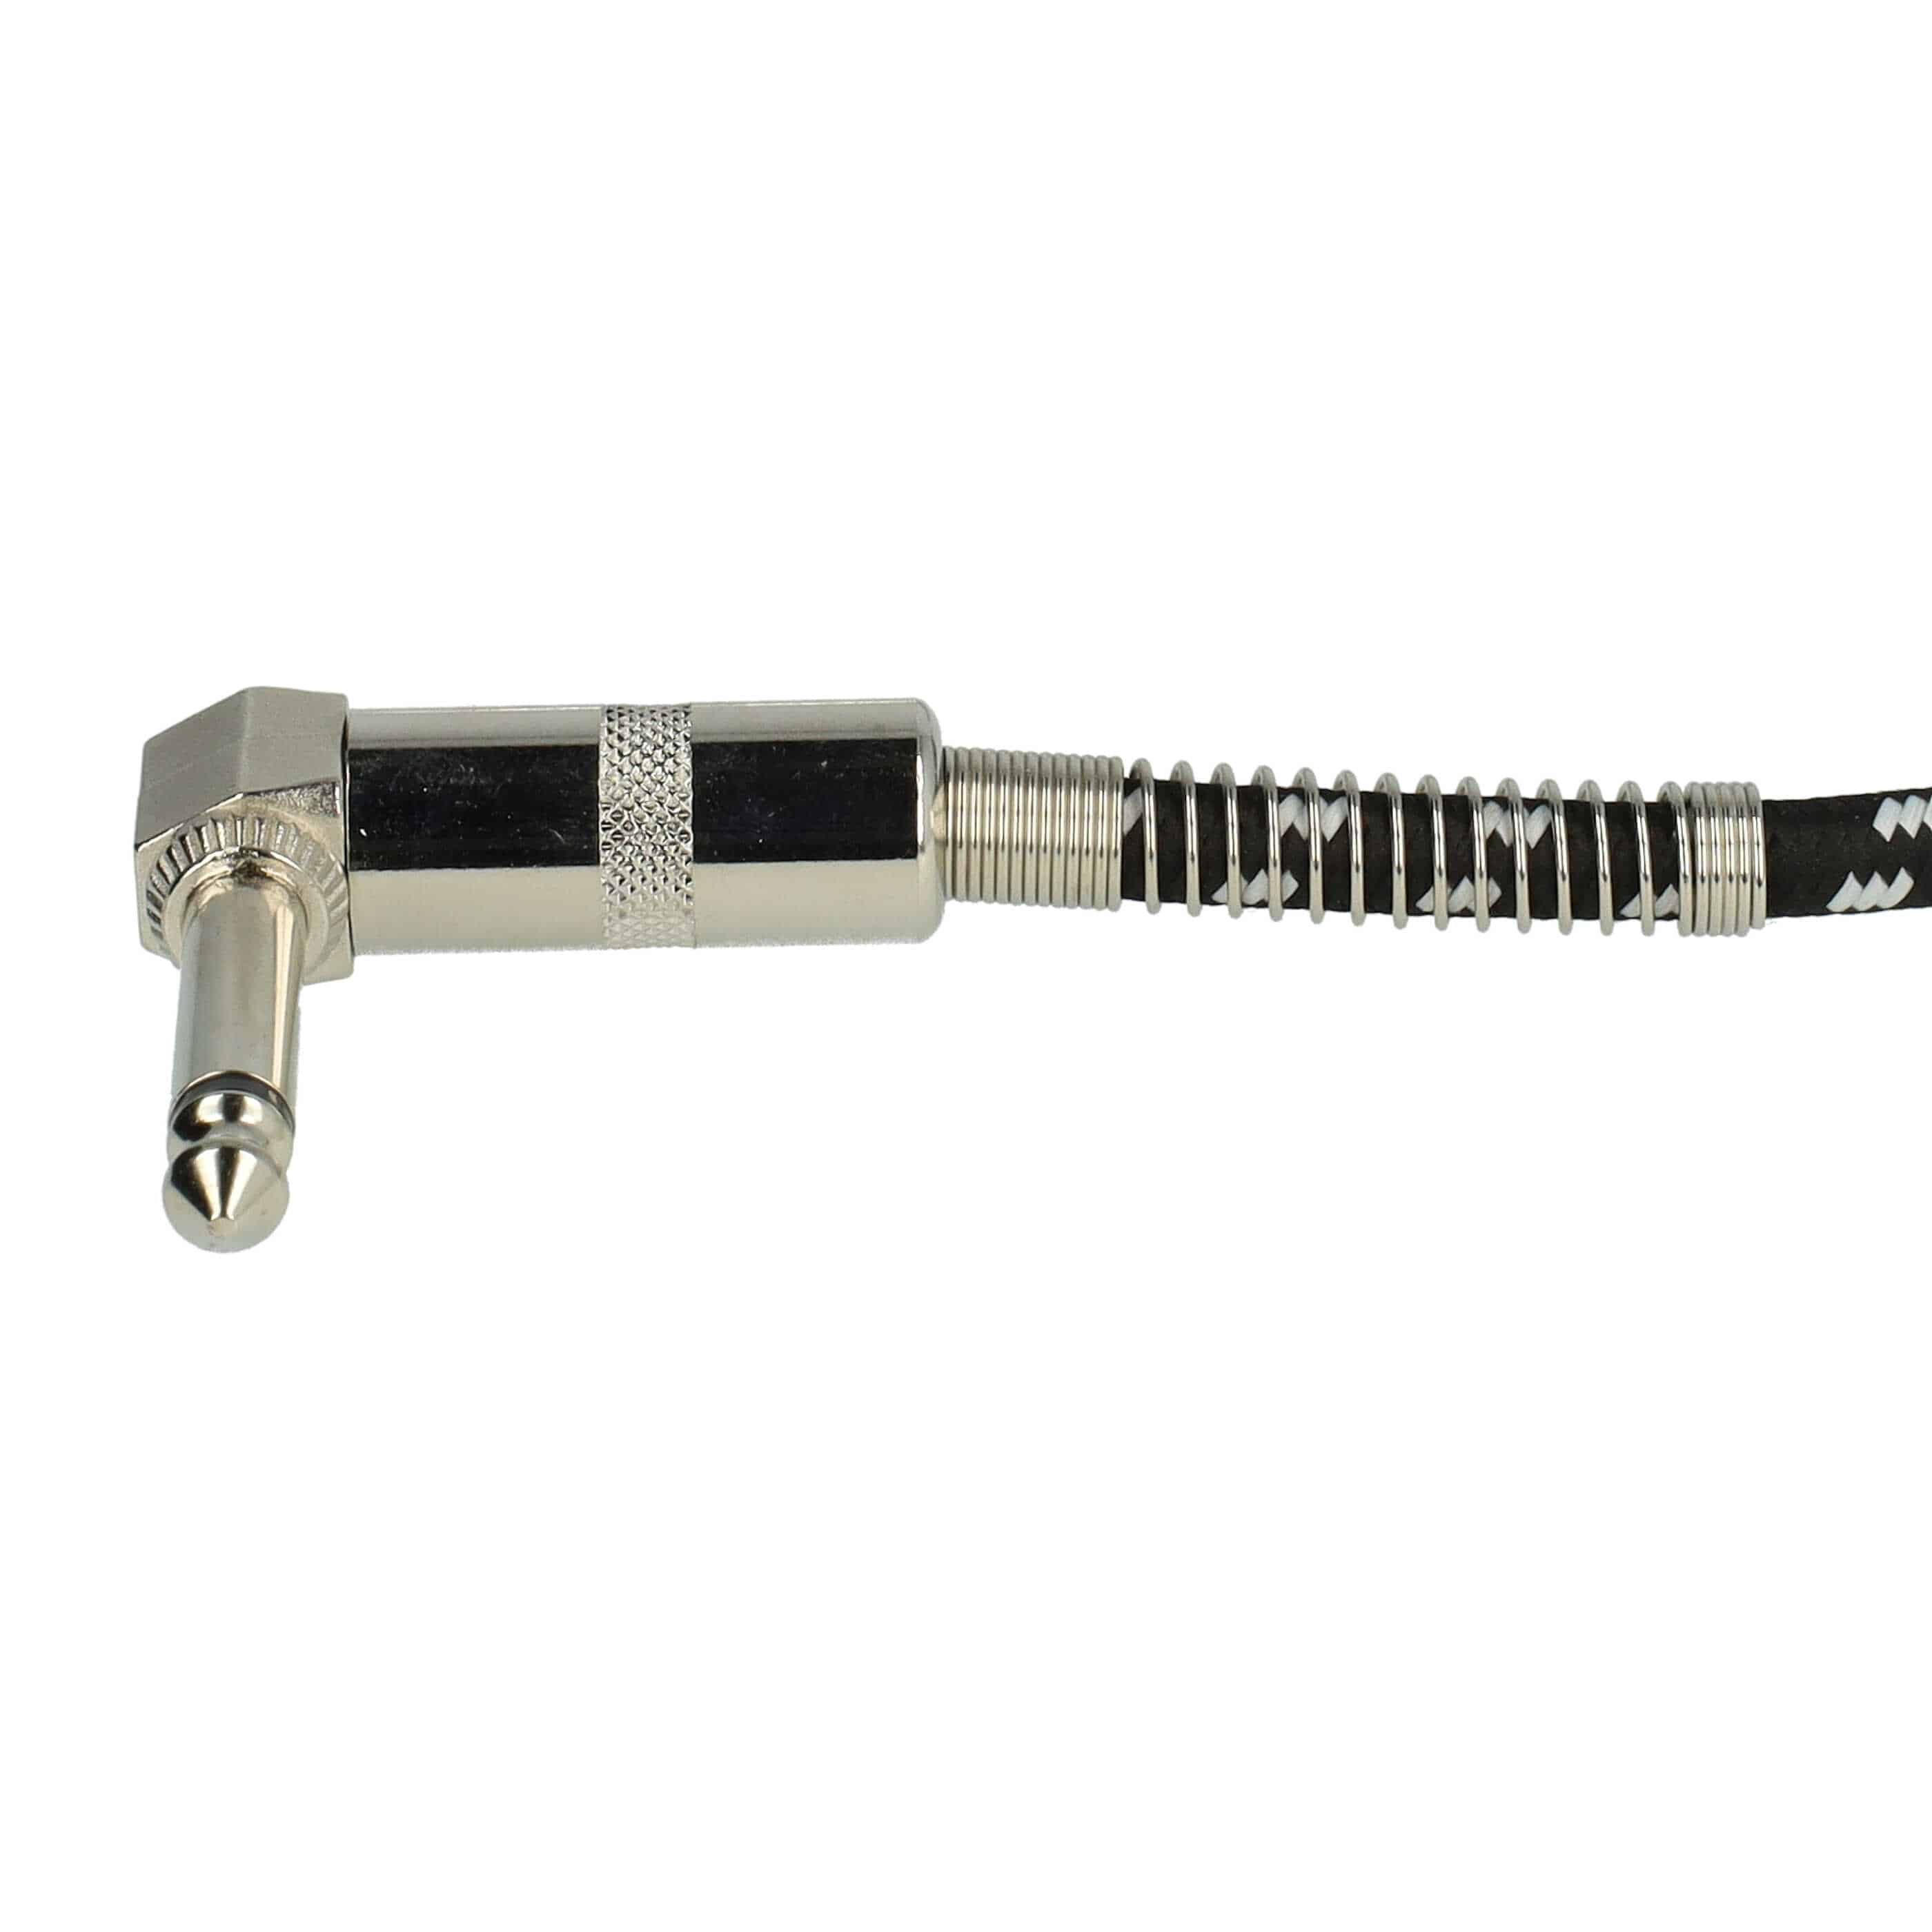 Kabel krosowy do efektów gitarowych 30 cm - kabel gitarowy jack 6,35 mm, kątowy, pleciony, biały / srebrny